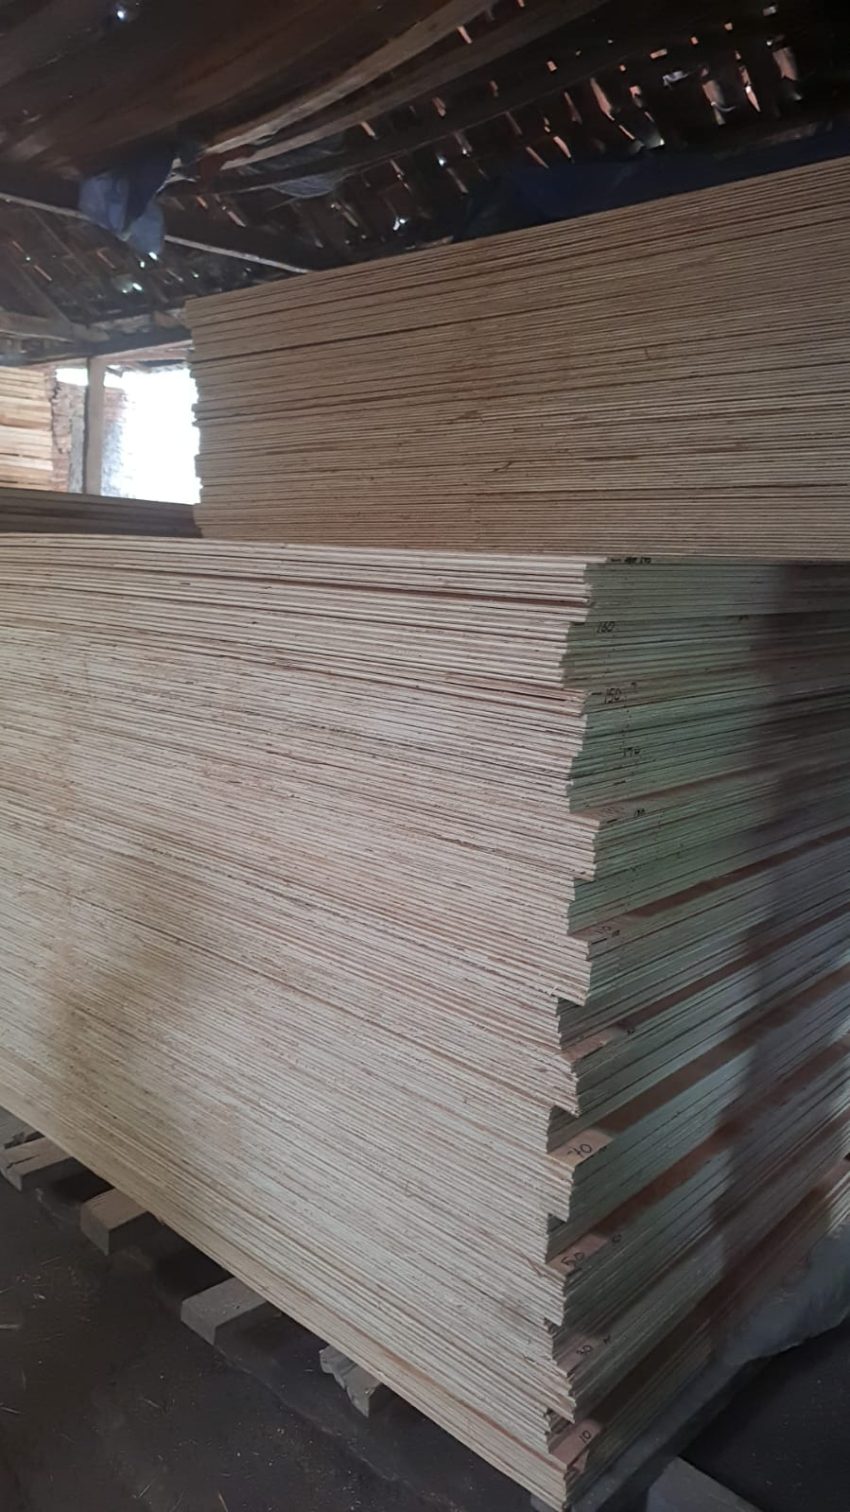 Jual Triplek, jual triplek murah, jual Plywood, Harga Triplek terbaru, harga plywood terbaru, jual kayu lapis